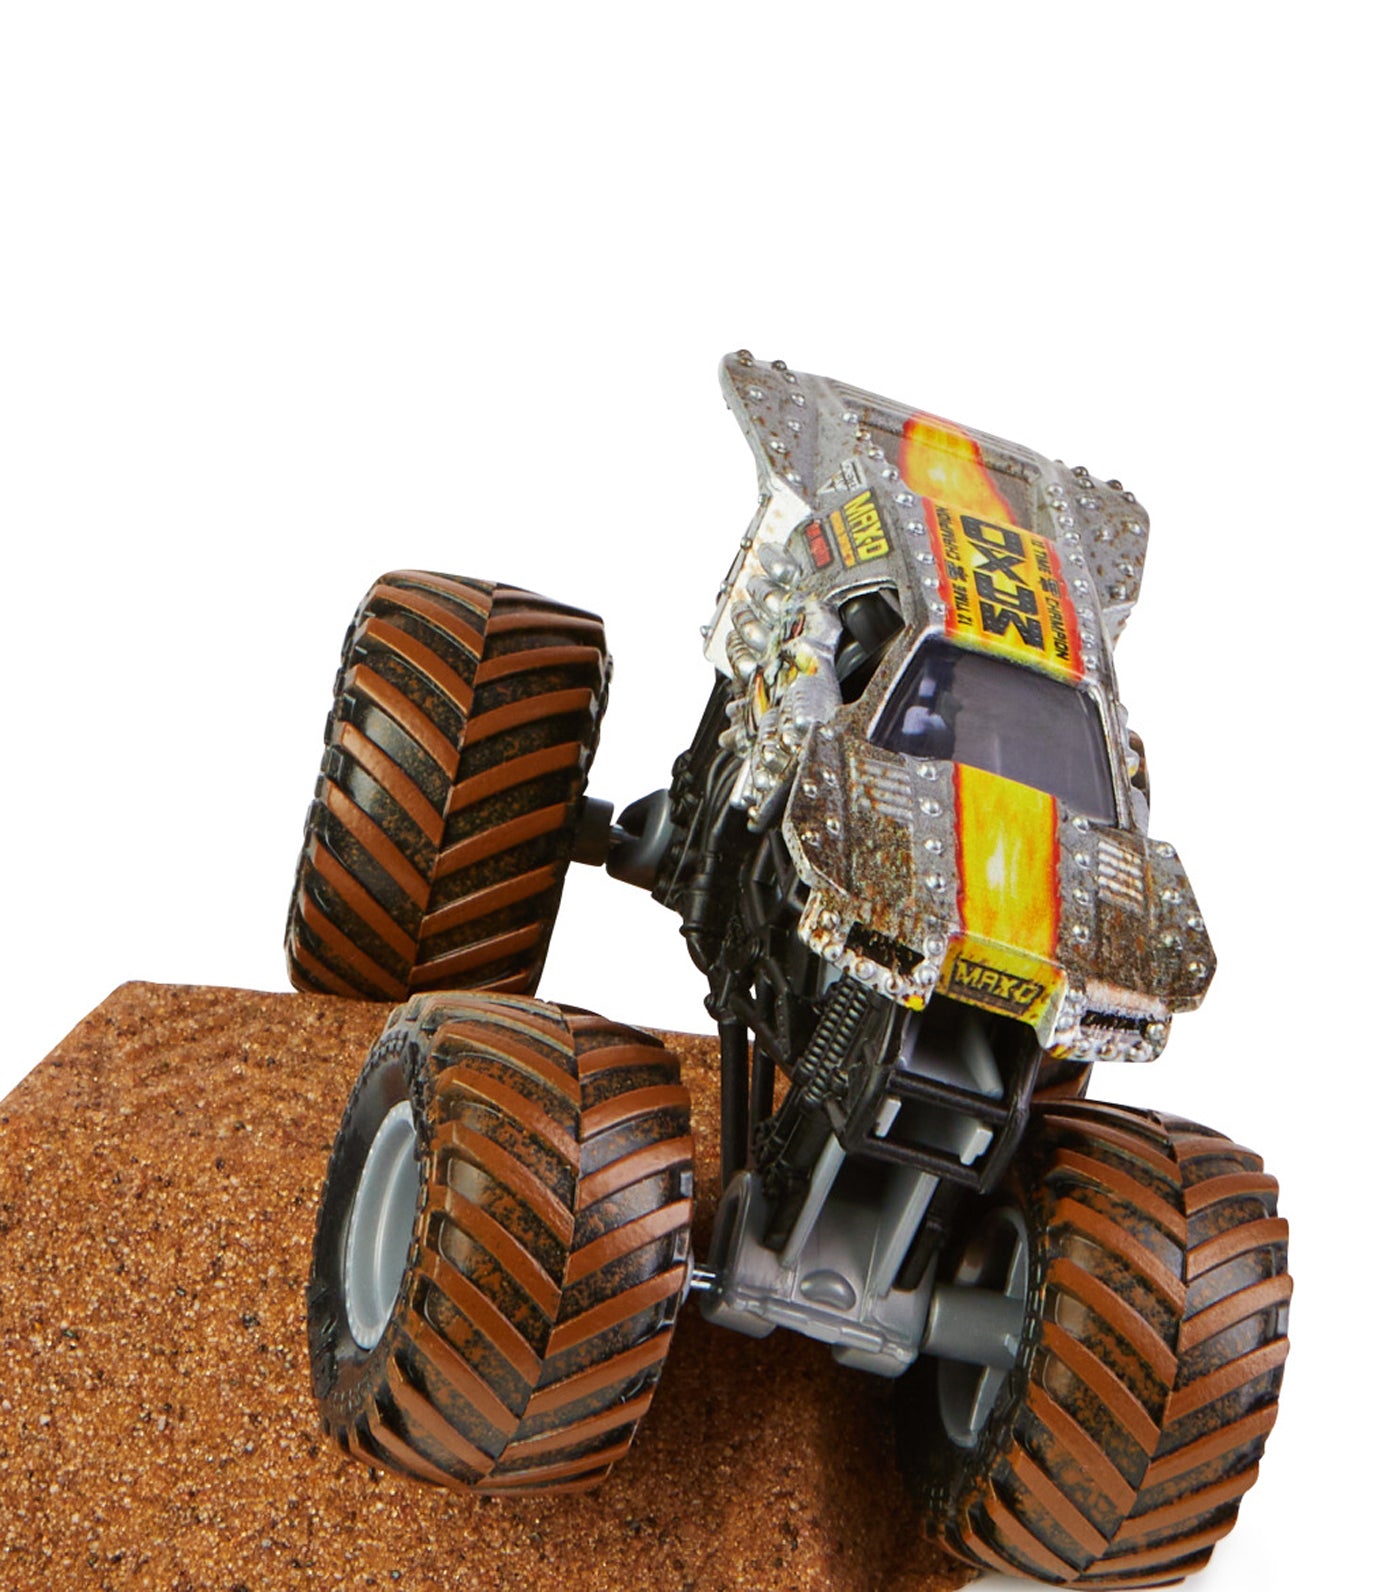 Max-D Monster Dirt Truck Starter Kit - Kinetic Sand Playset